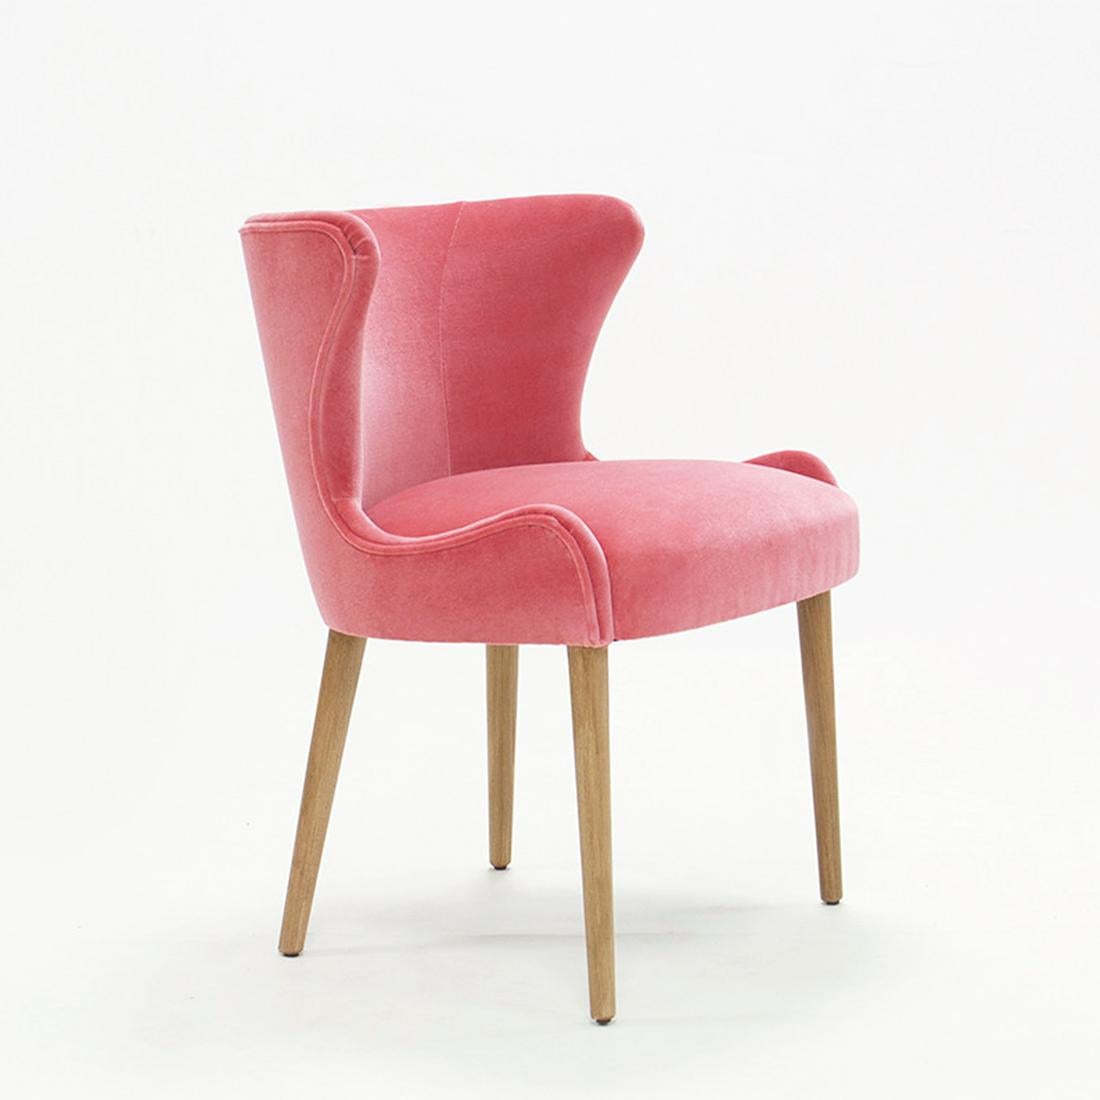 Chaise Darling avec structure en bois massif, rembourrée
assise et dossier, recouverts de velours rose rubis de haute qualité 
tissu. Également disponible avec d'autres tissus sur demande.
 